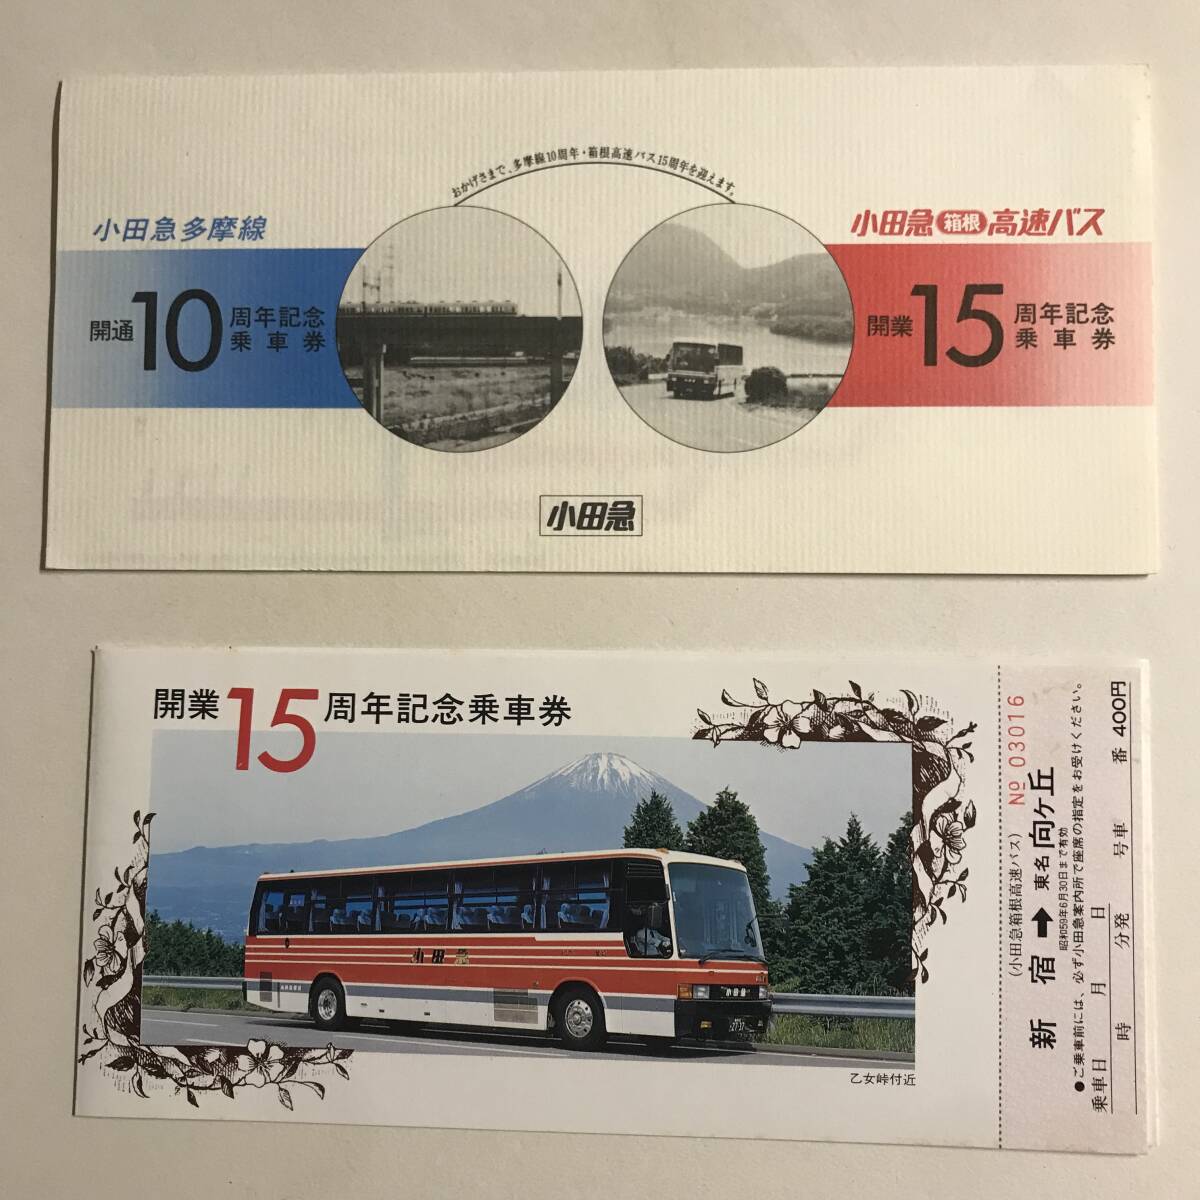 小田急多摩線 開通10周年 / 箱根 高速バス 開業15周年 記念乗車券 昭和59年 未使用 @S-A-B